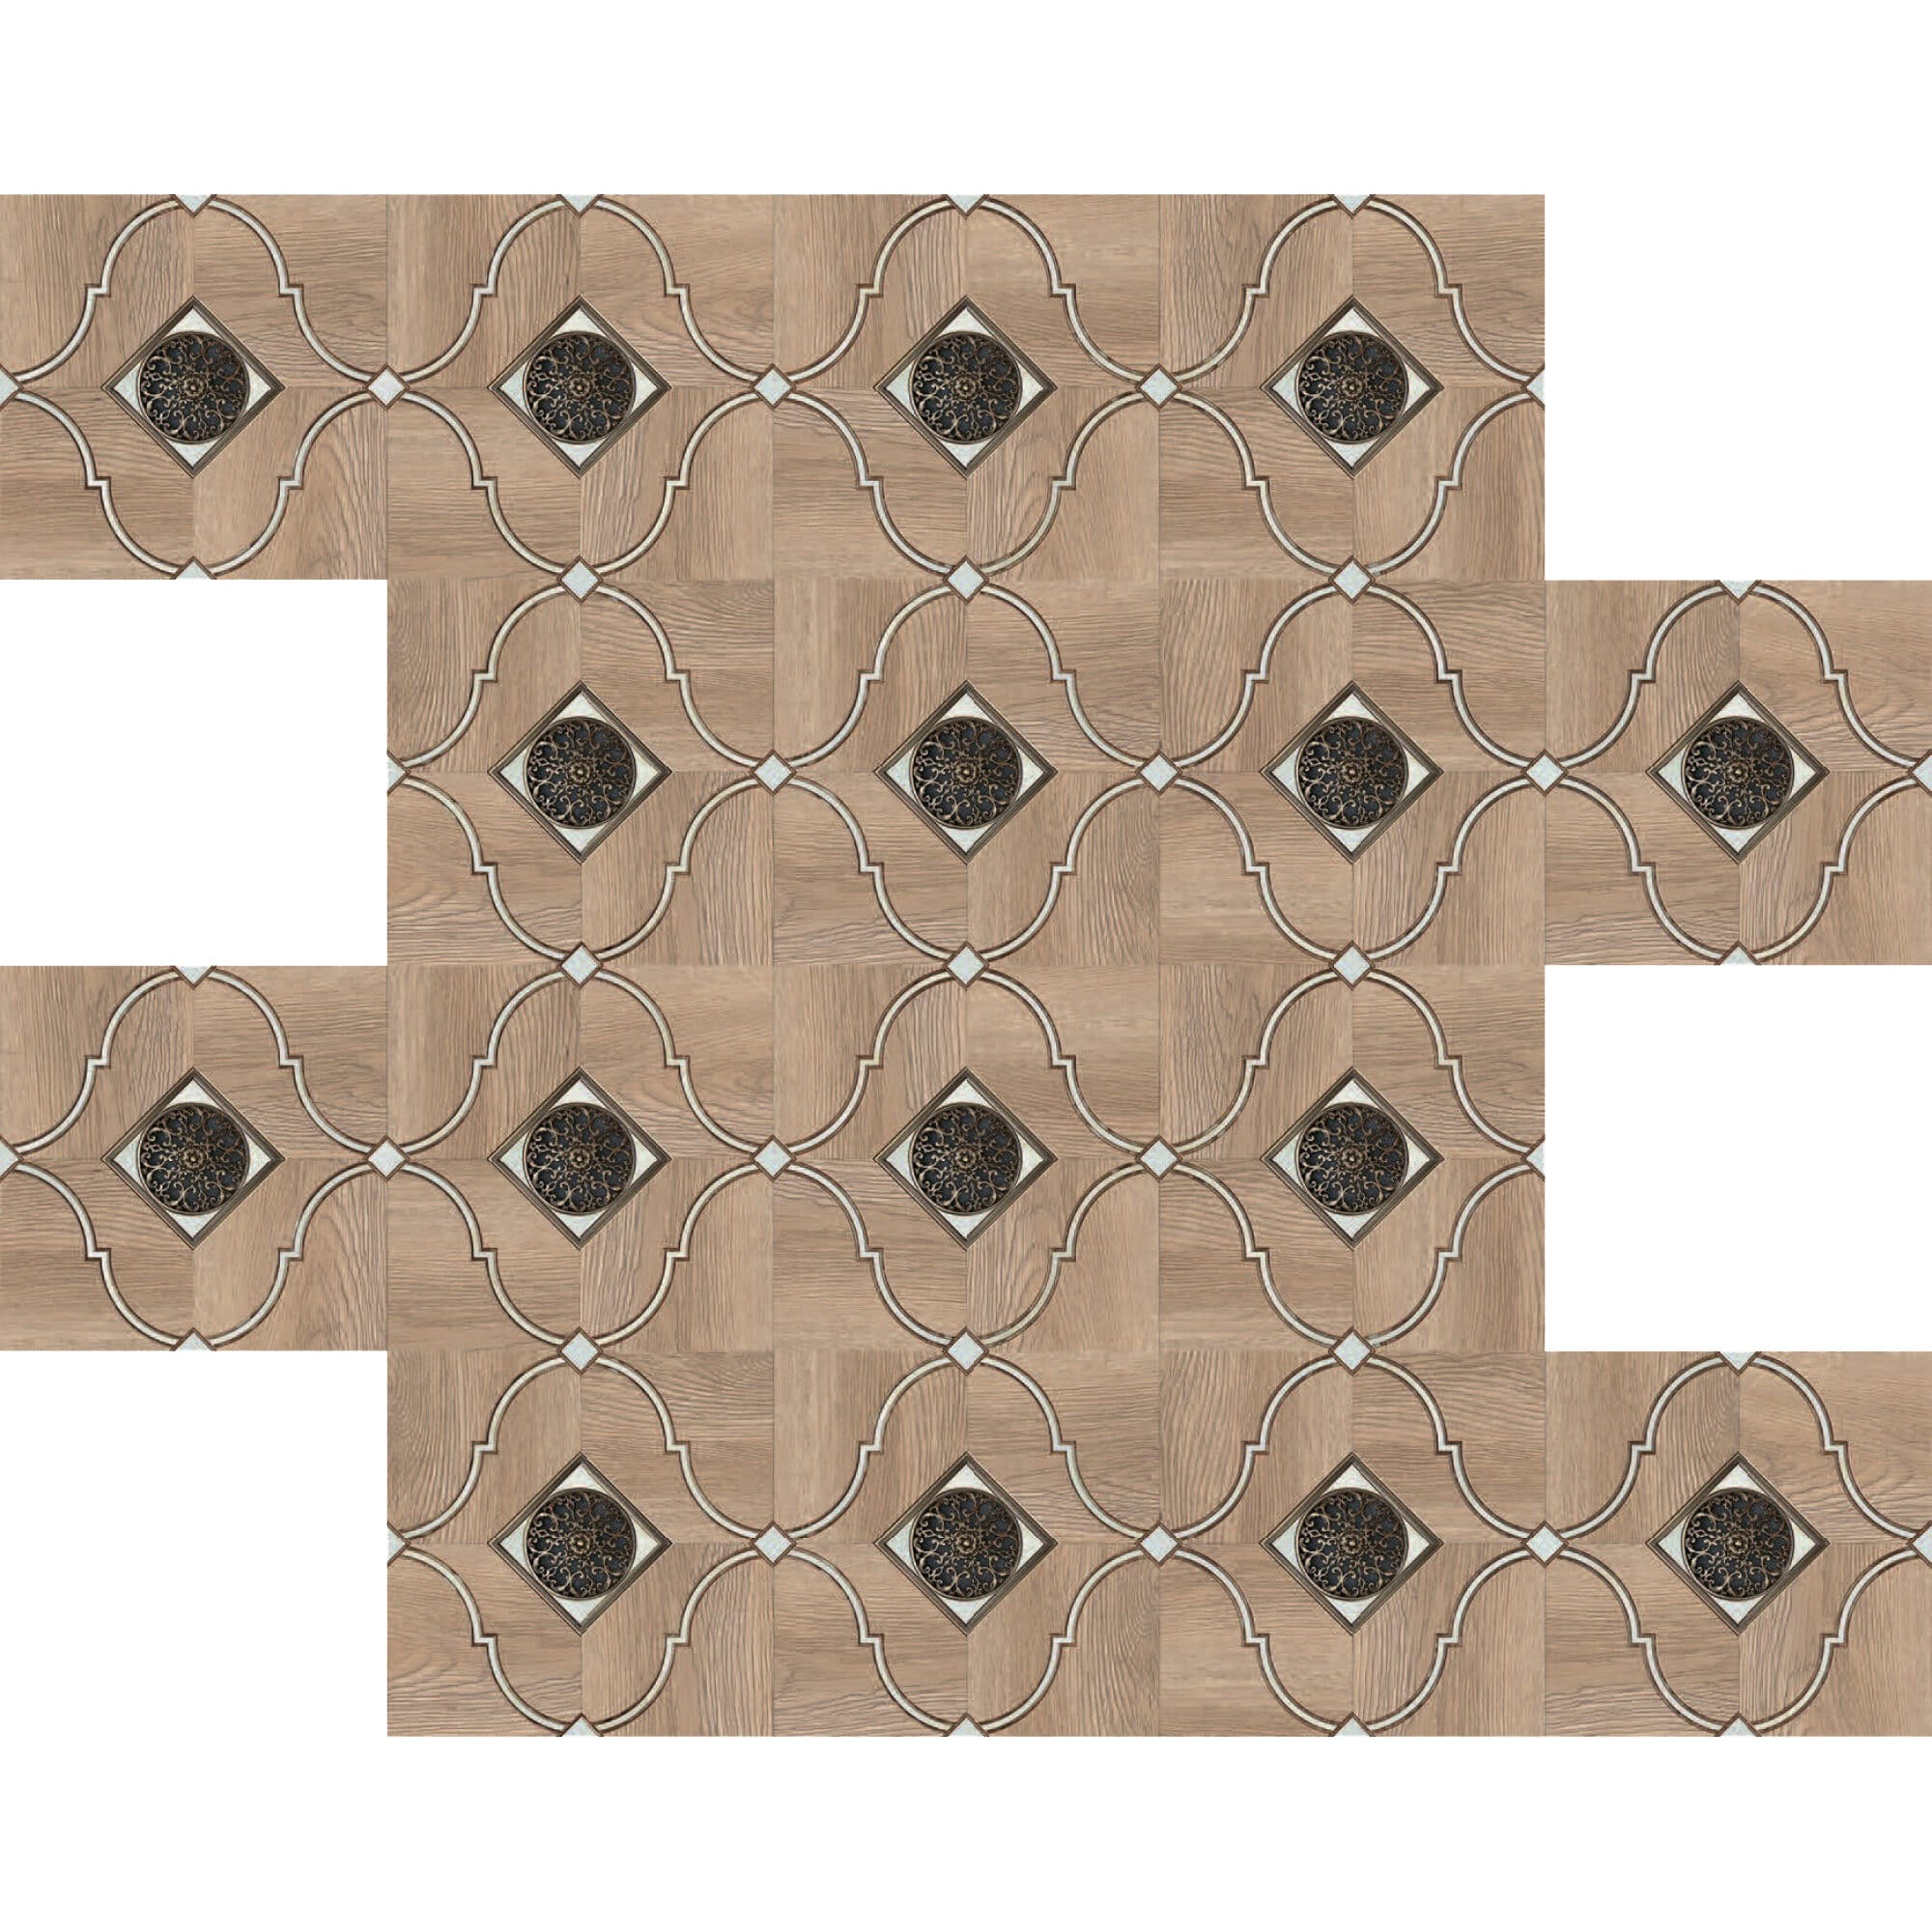 фото Ламинат novita palace floor орнамент mz-001 1168x292x4,2 мм